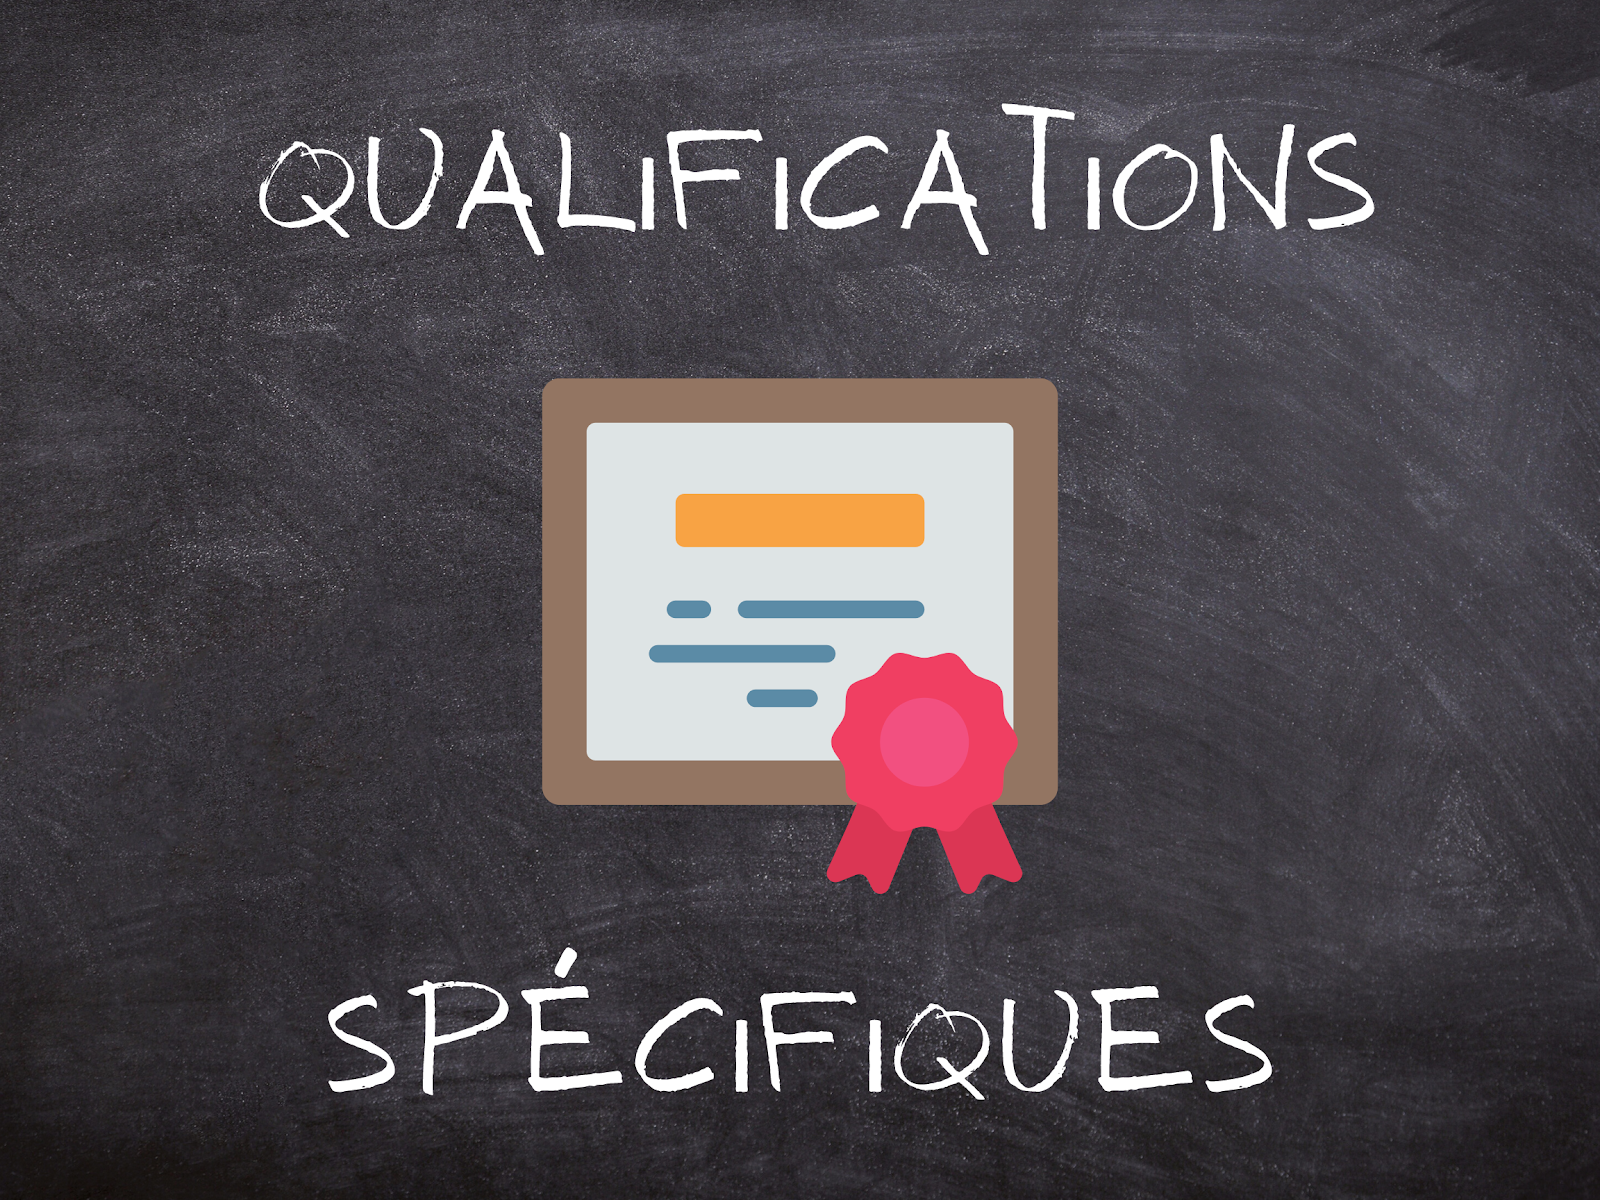 Qualifications spécifiques